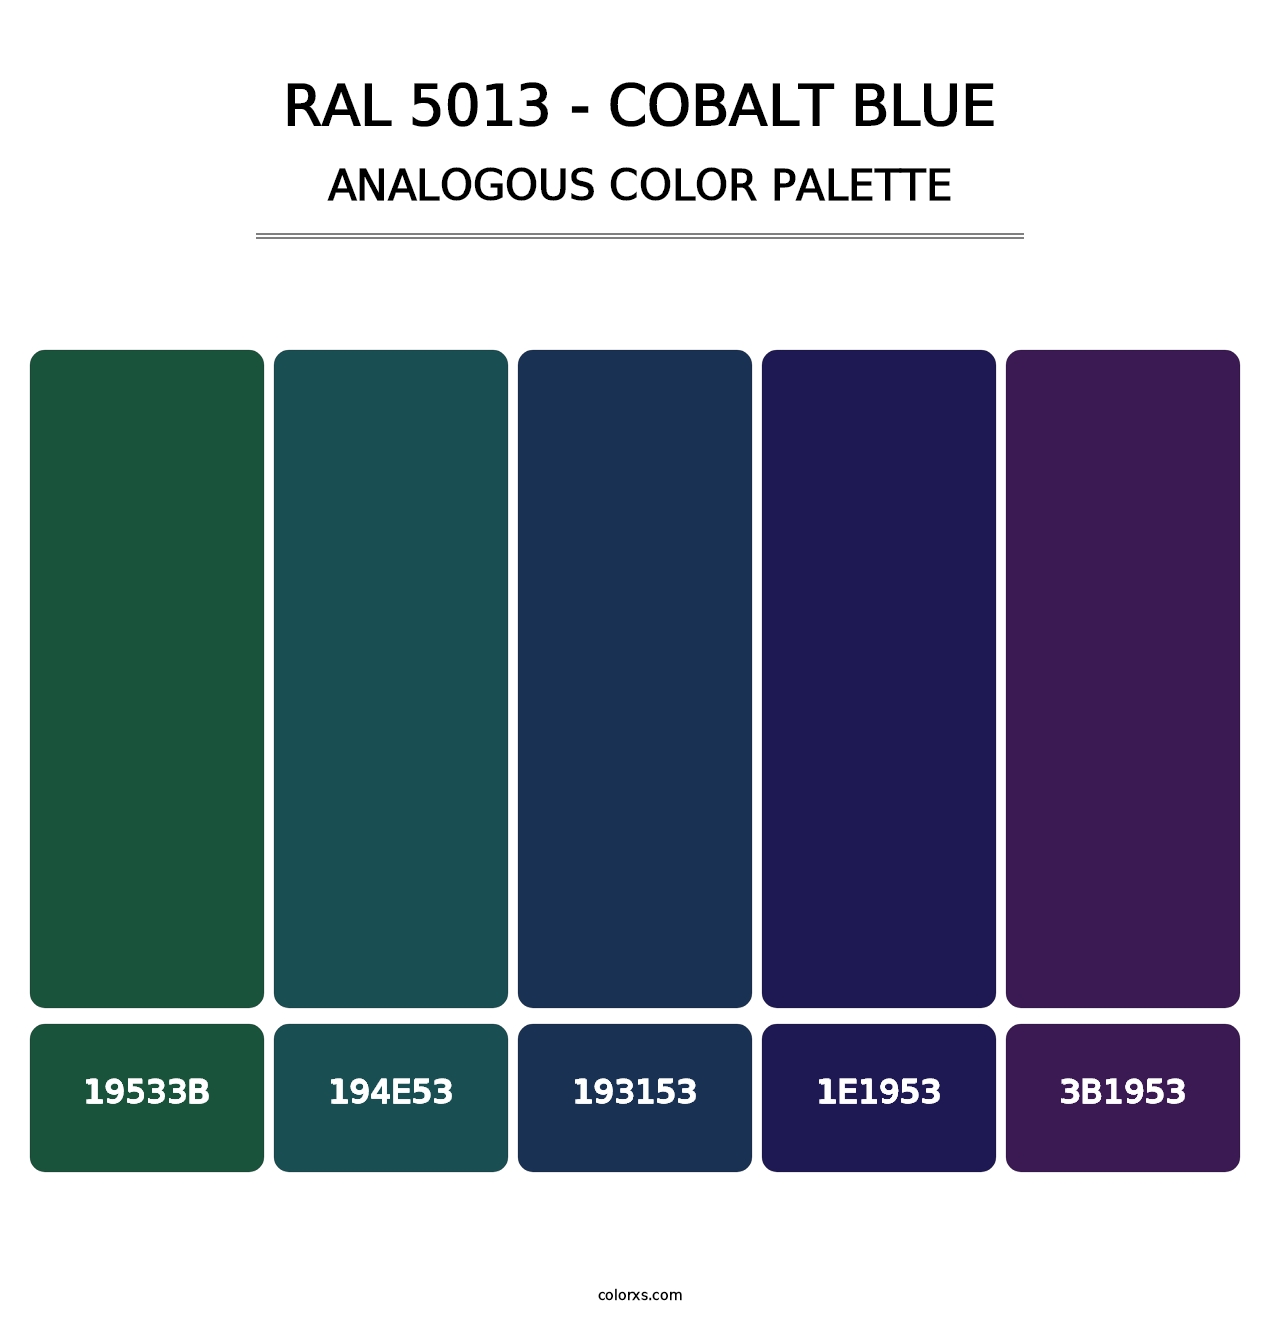 RAL 5013 - Cobalt Blue - Analogous Color Palette